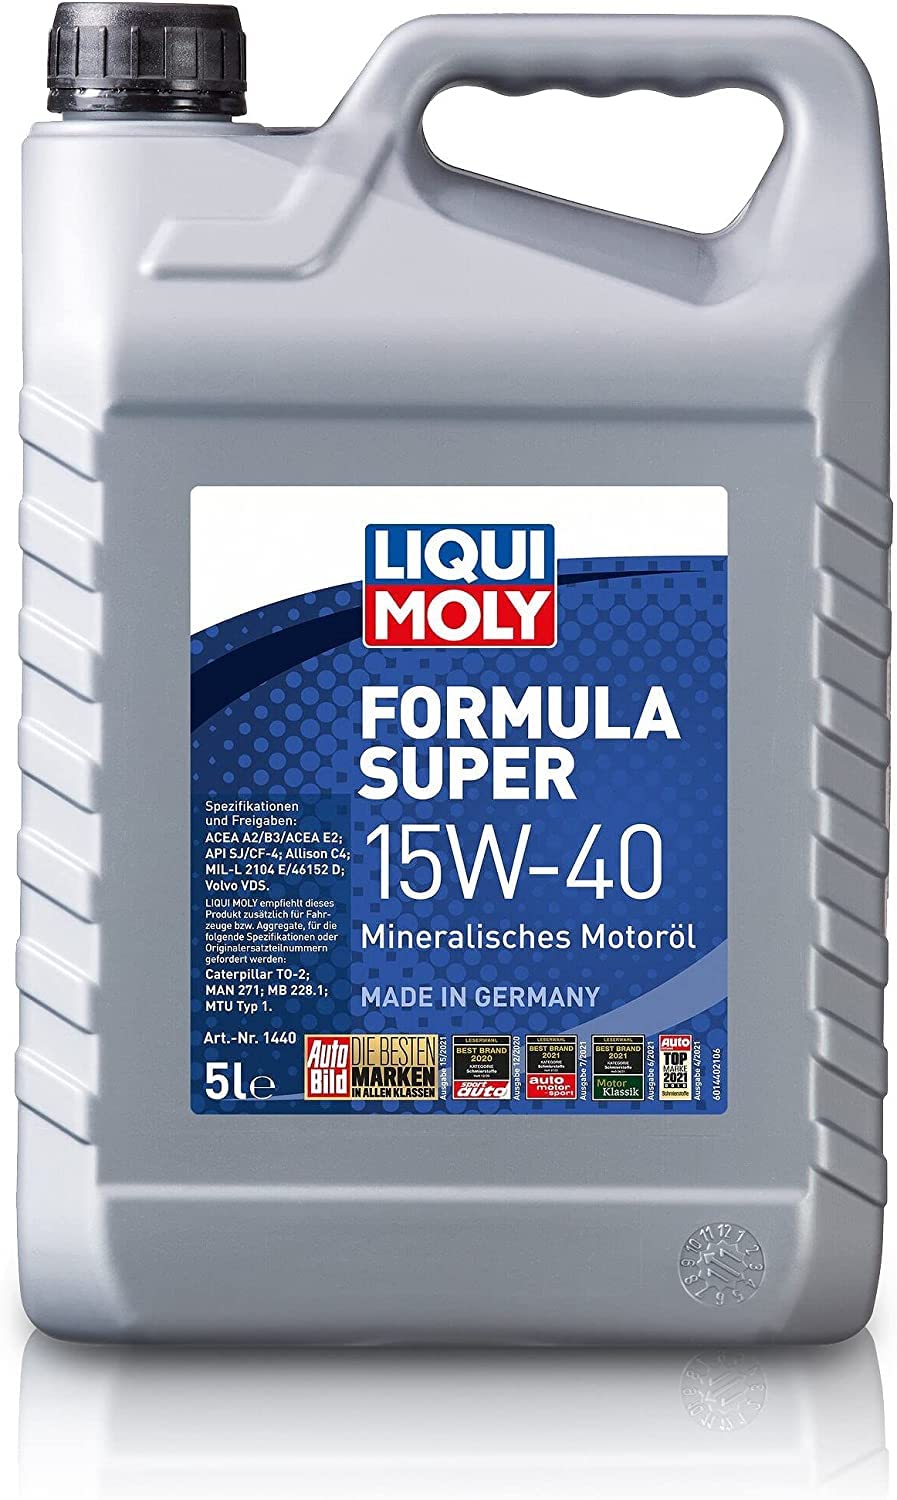 LIQUI MOLY Formula Super 15W-40 | 5 L | mineralisches Motoröl | Art.-Nr.: 1440 von Liqui Moly